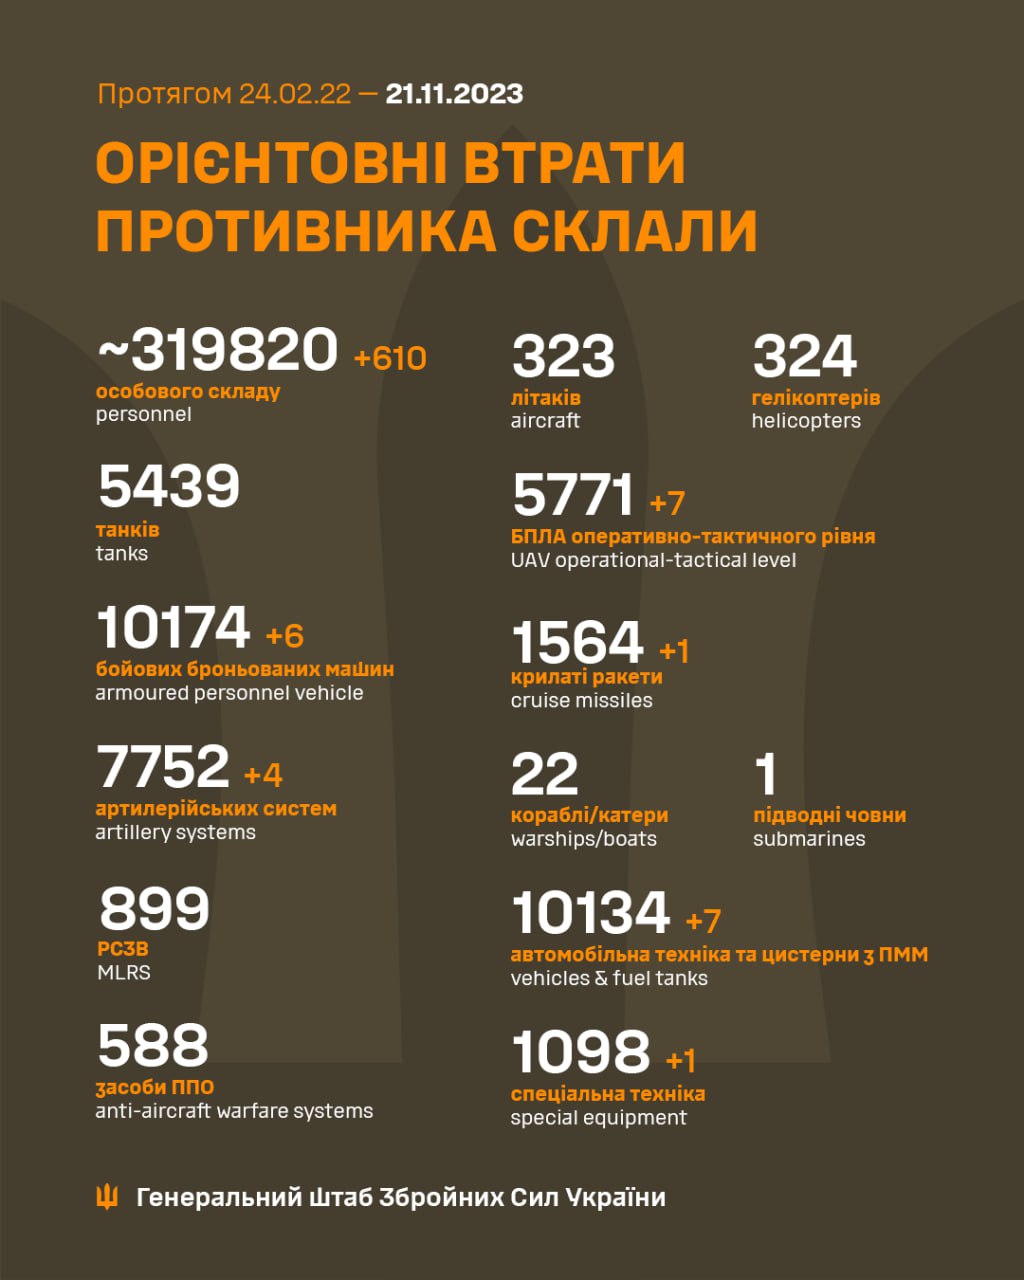 Воєнні потери армии РФ на 21 ноября 2023 года (Инфографика – Генштаб ВСУ)